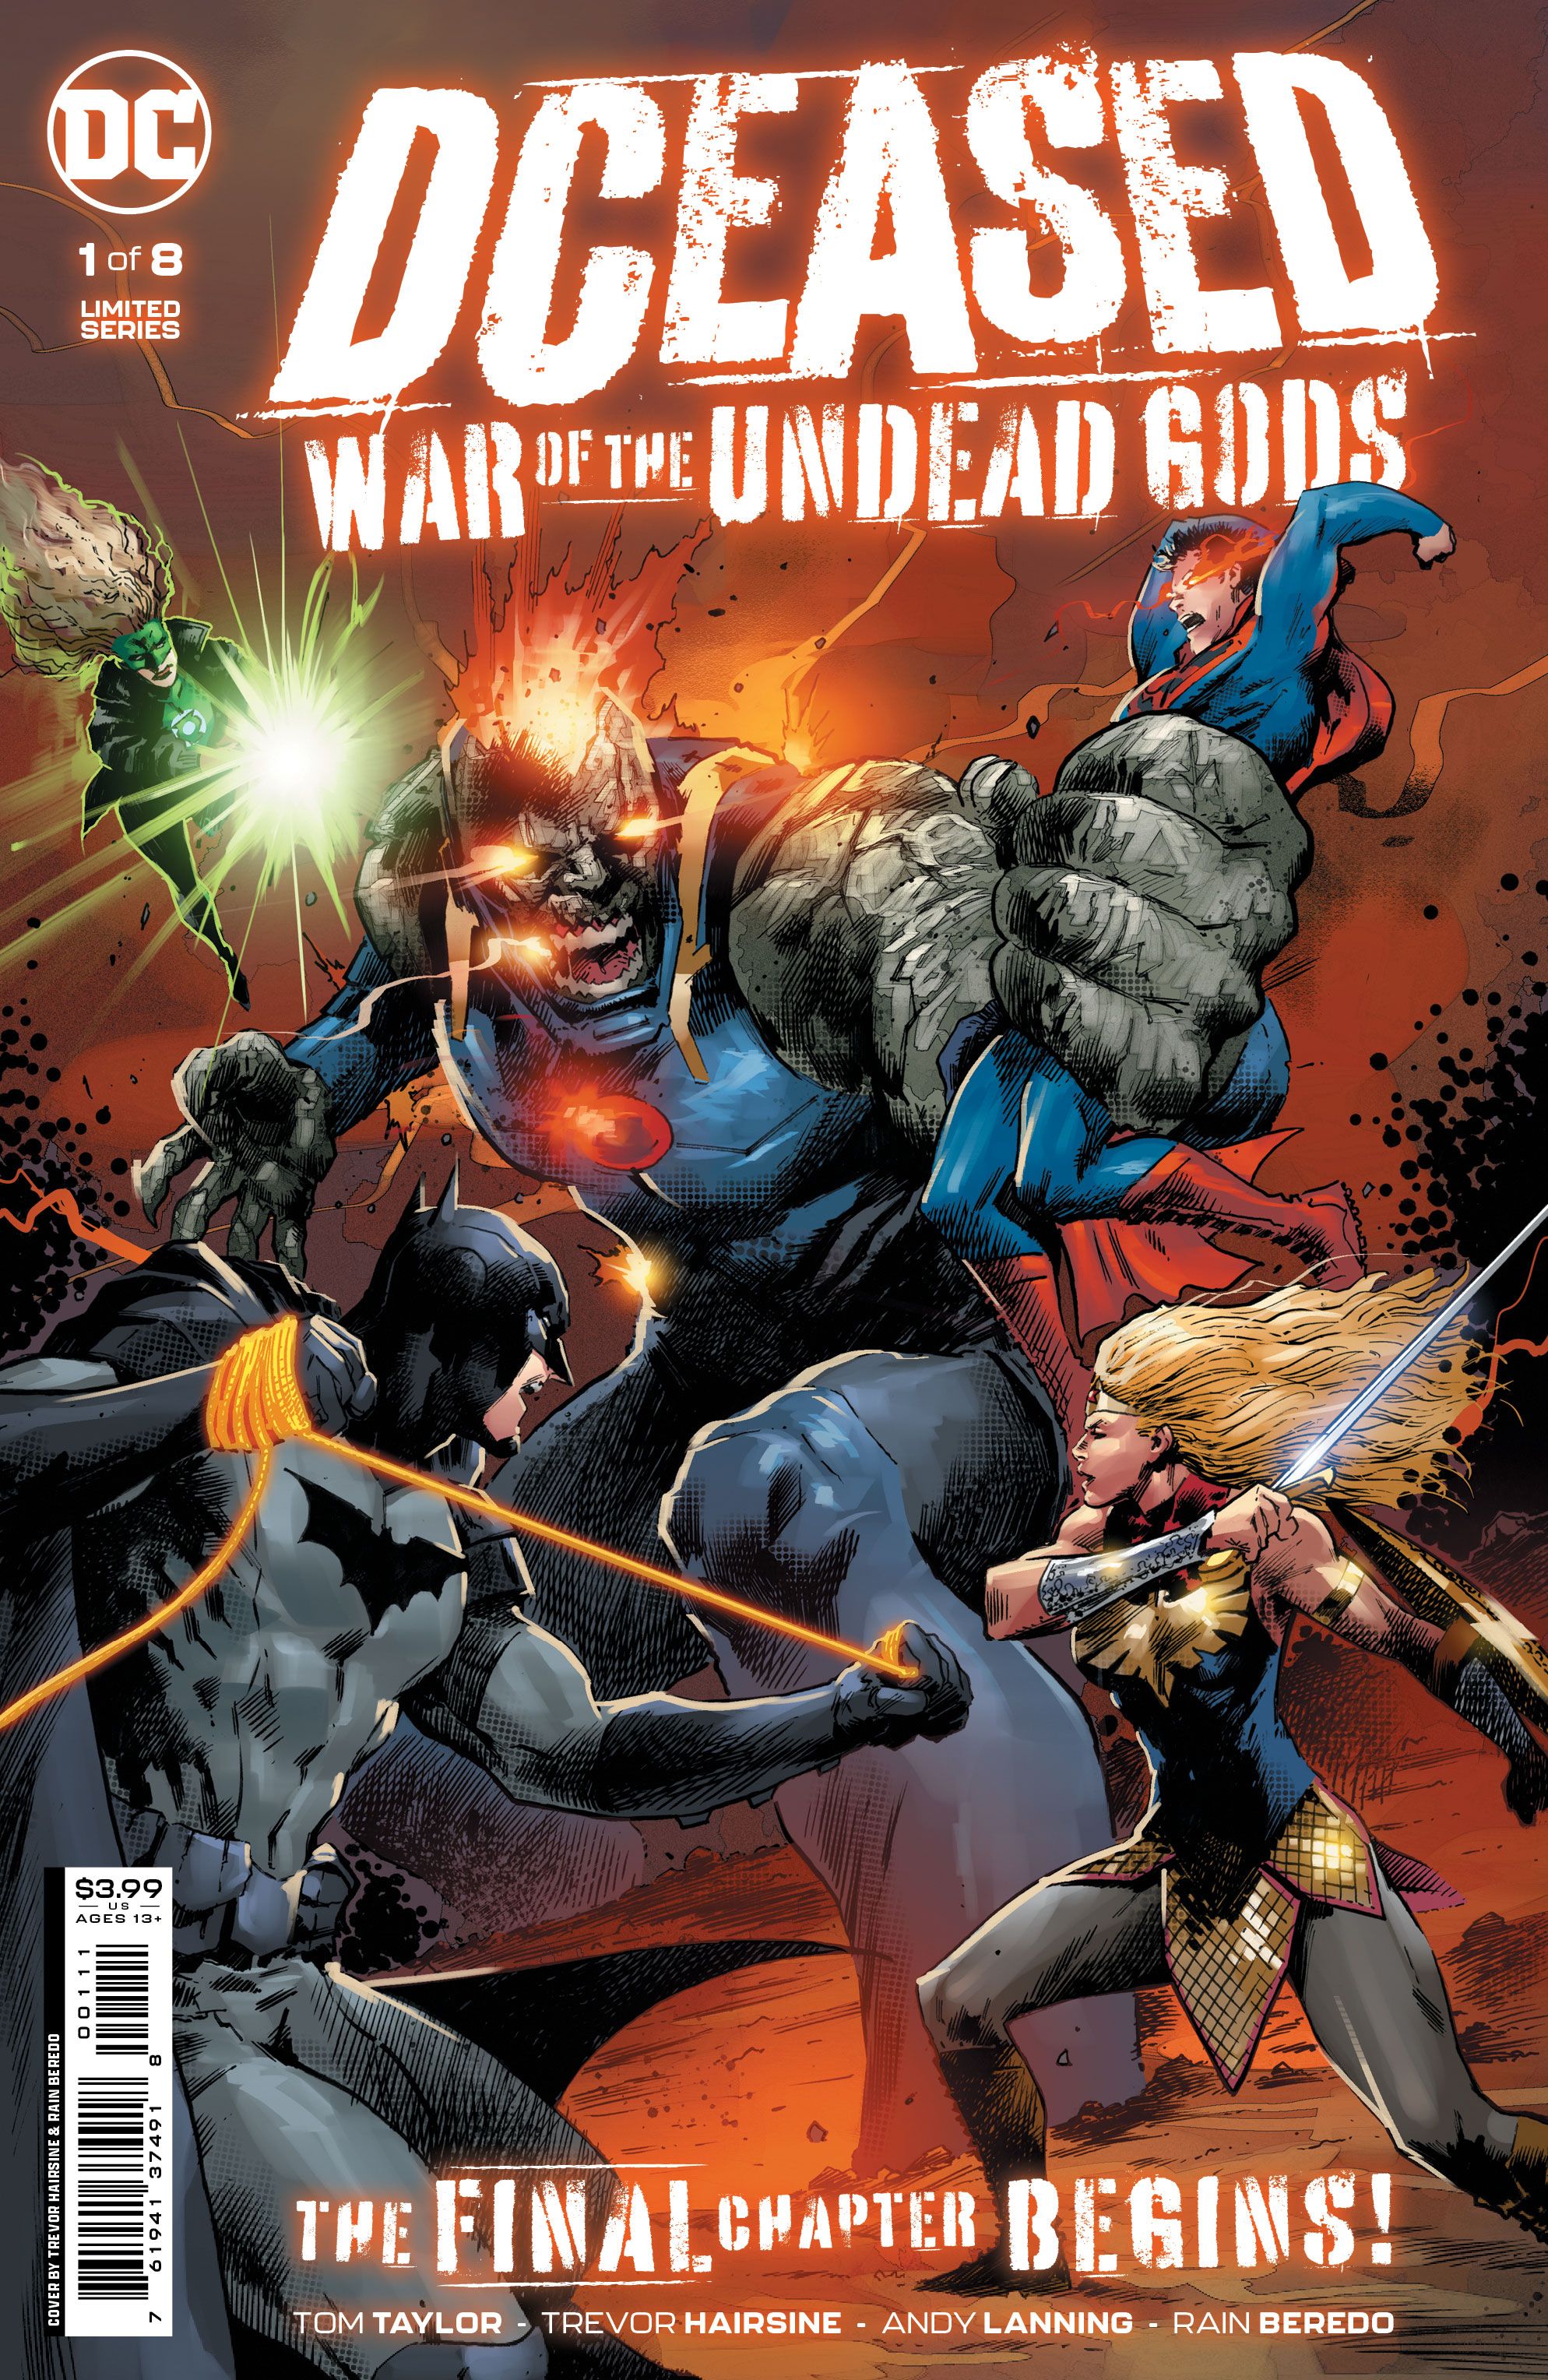 DCeased-War-of-the-Undead-Gods-1-1